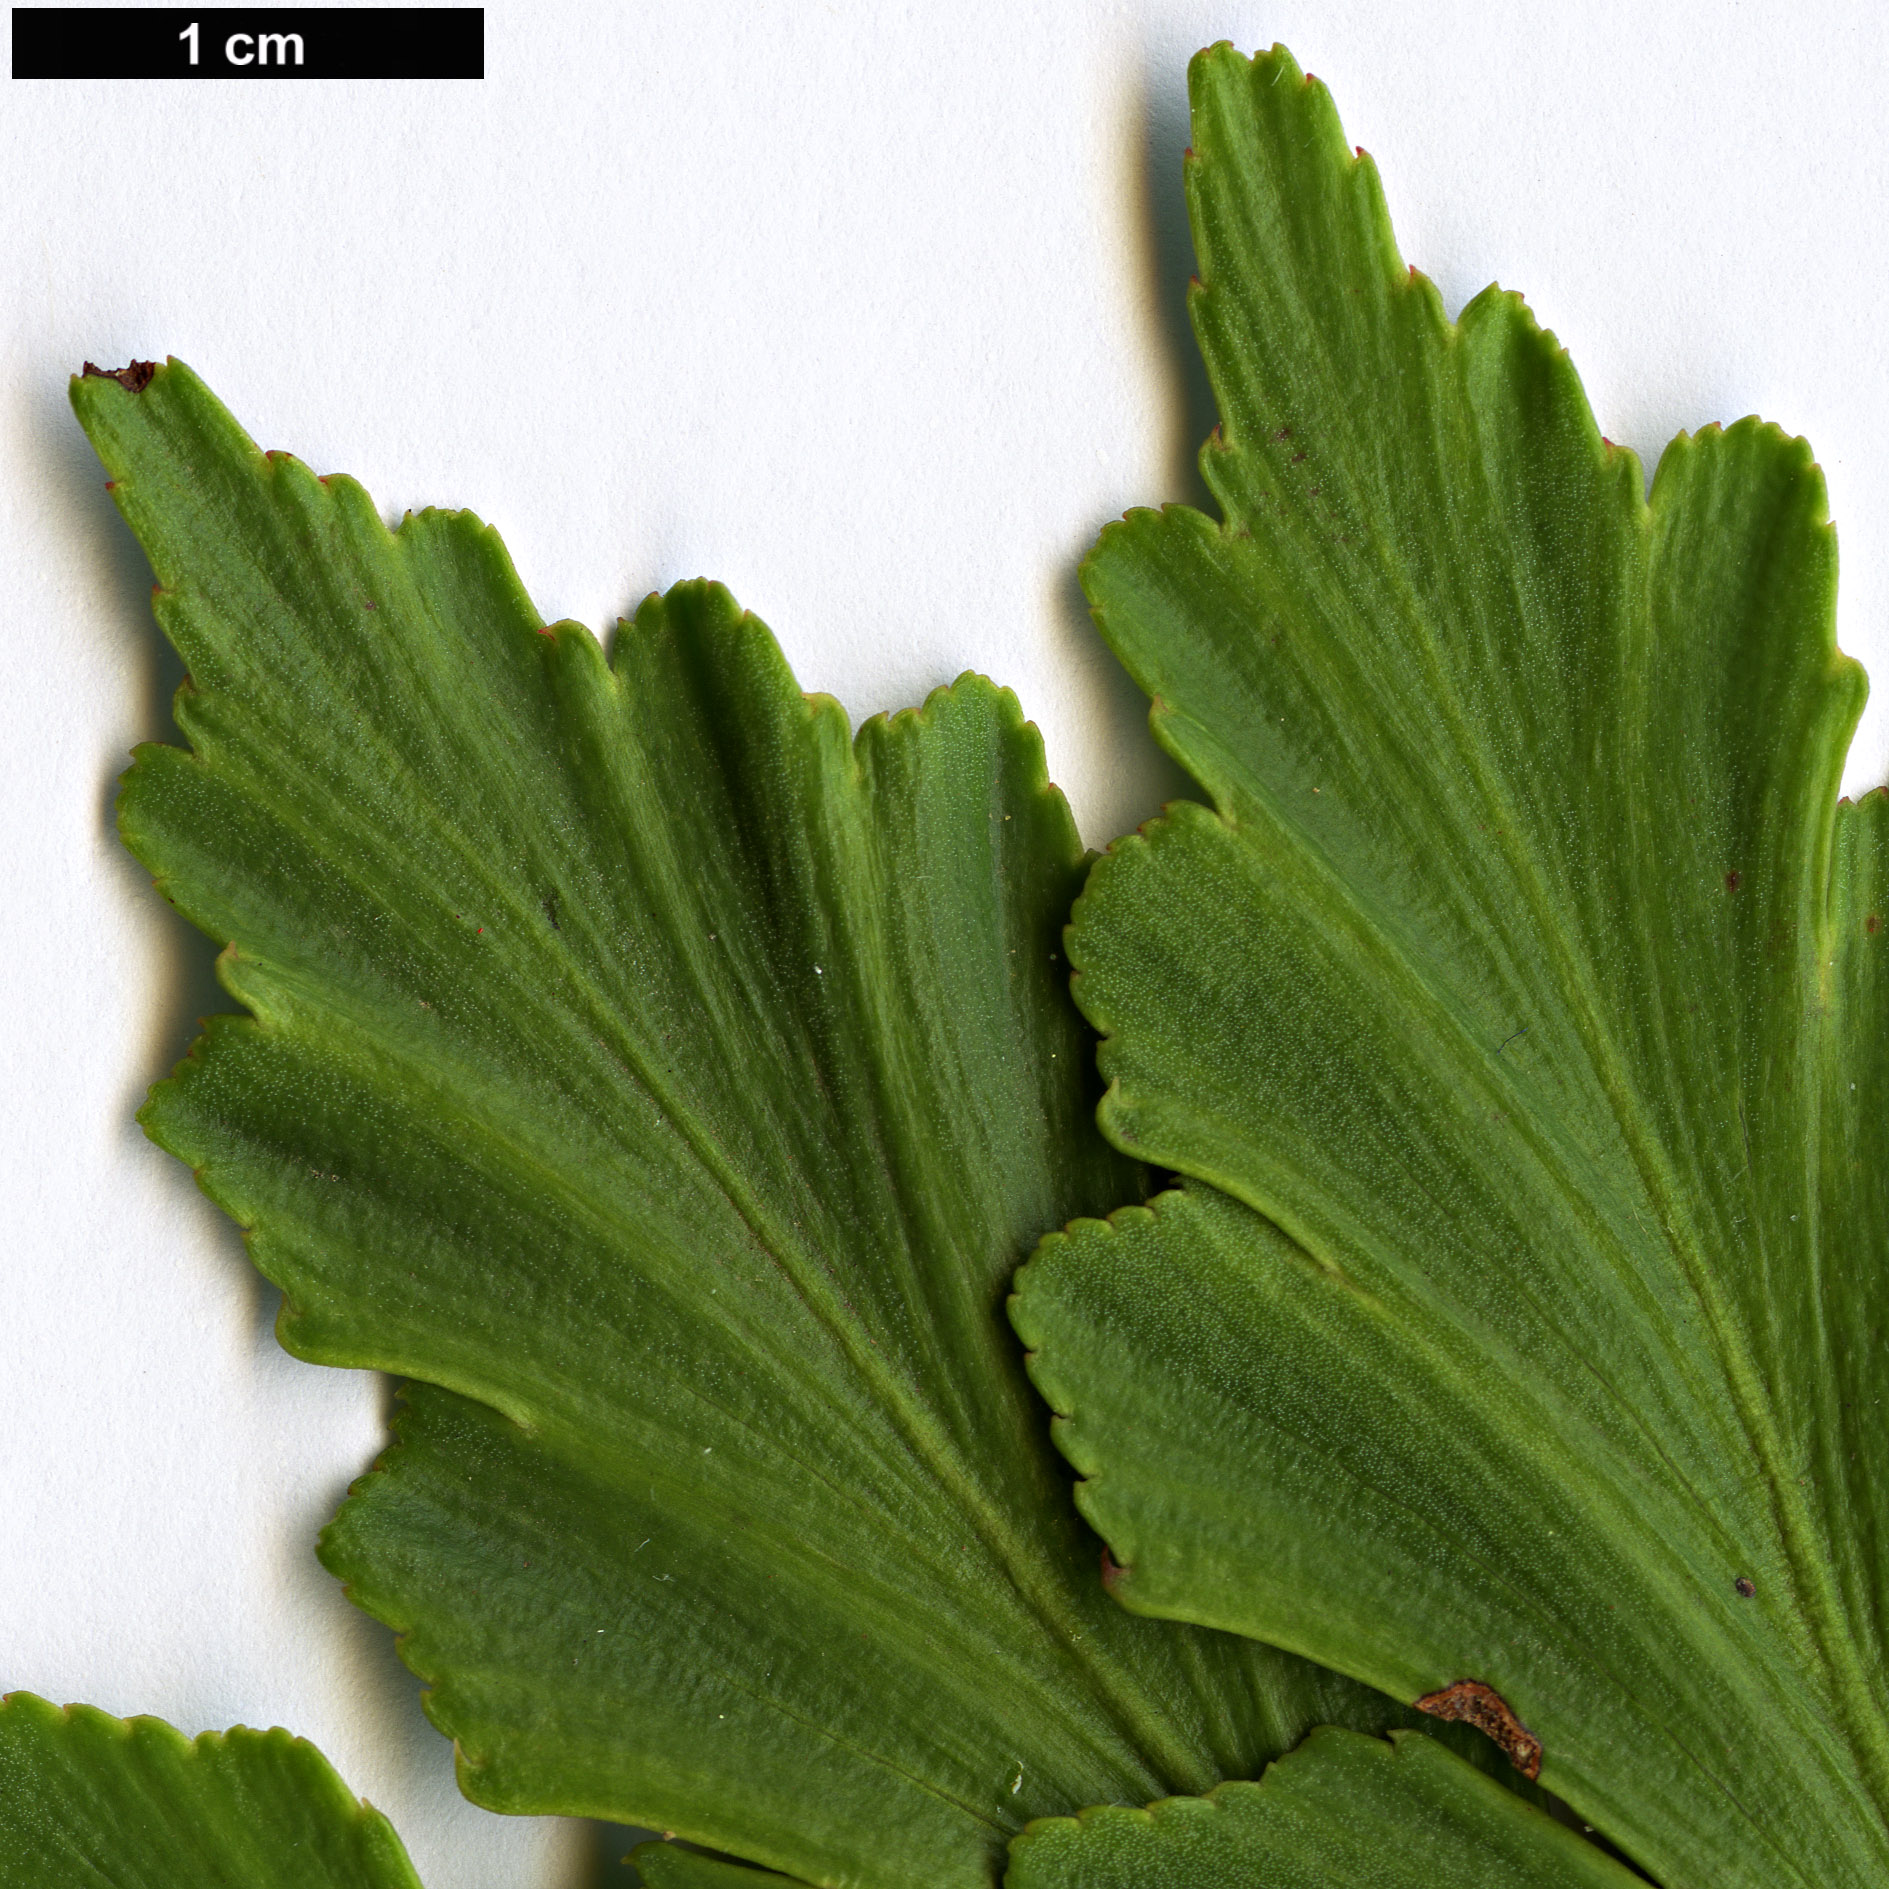 High resolution image: Family: Podocarpaceae - Genus: Phyllocladus - Taxon: aspleniifolius